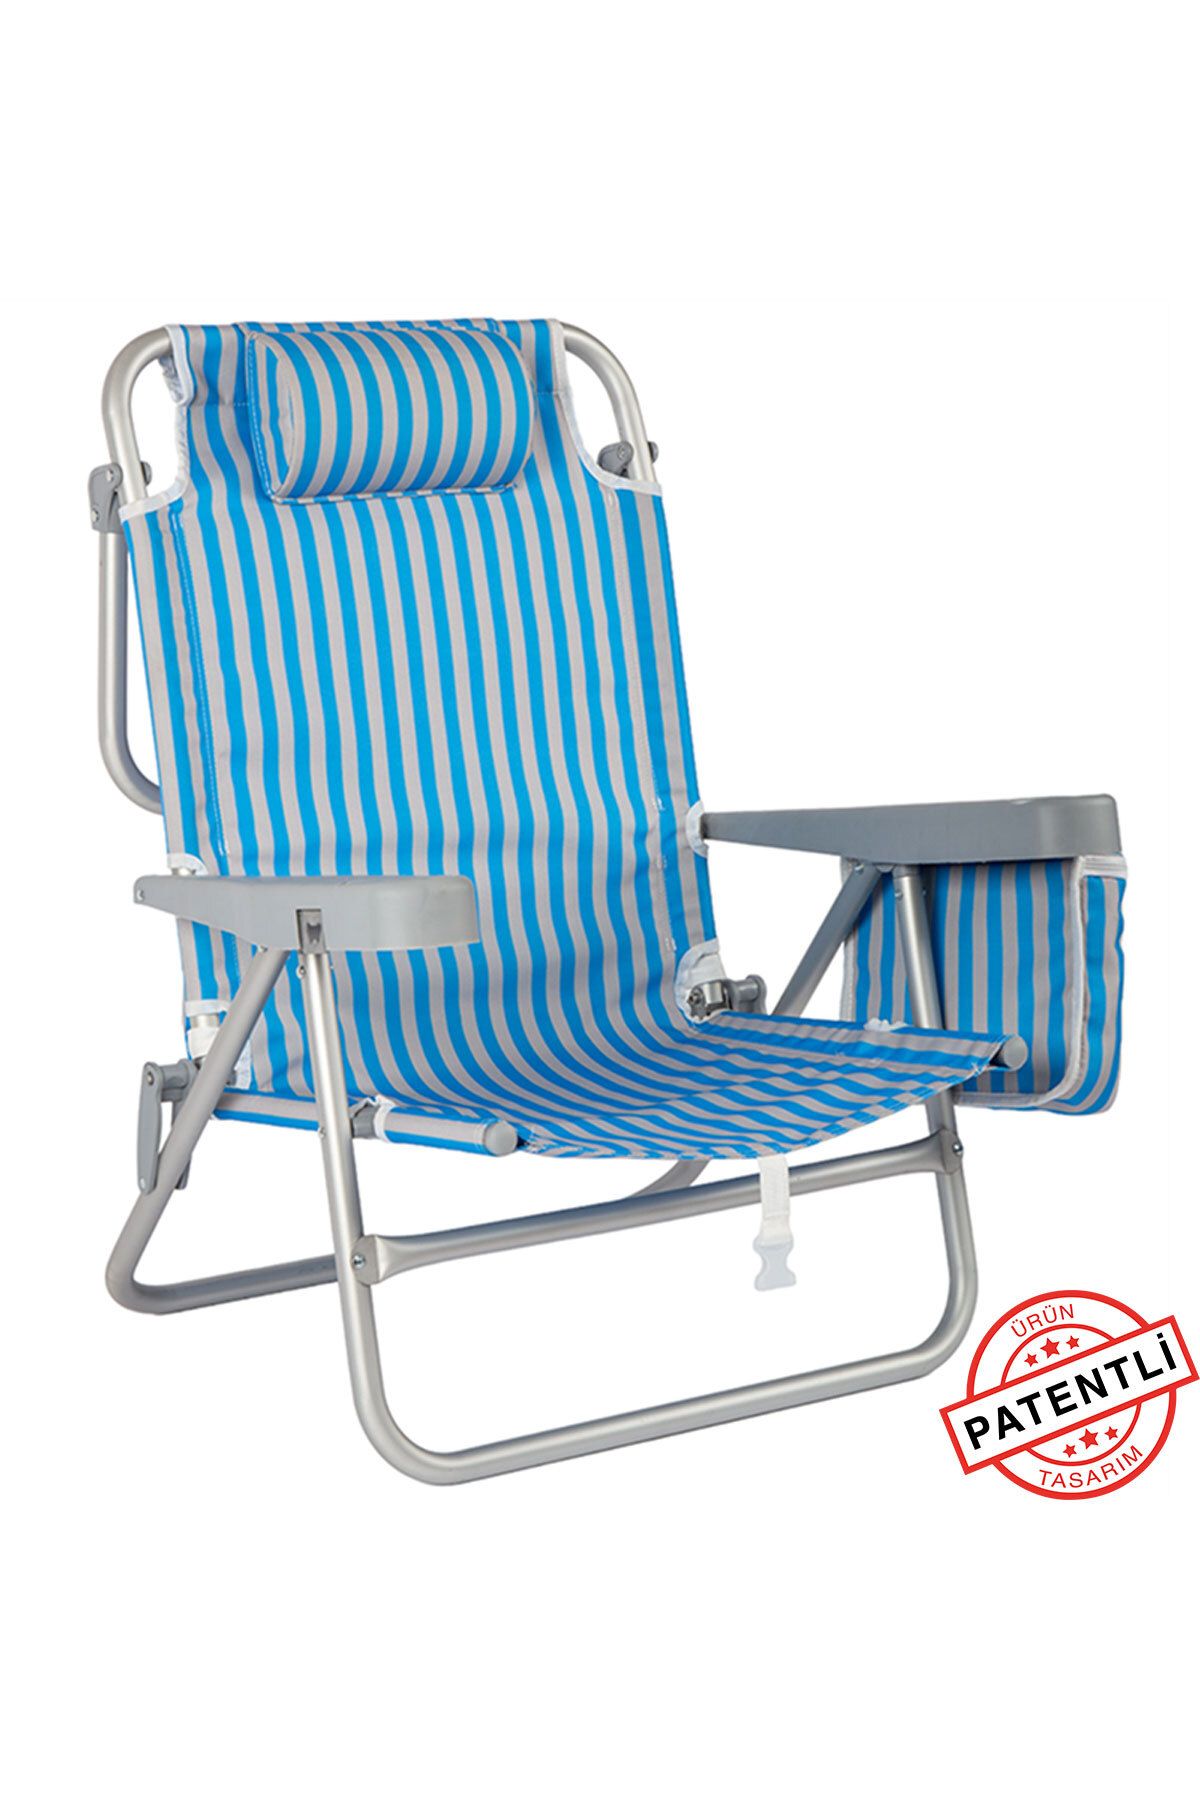 Funky Chairs Beach Star Alüminyum 5 Pozisyon Portatif Soğutucu Çantalı Şezlong Plaj Sandalyesi